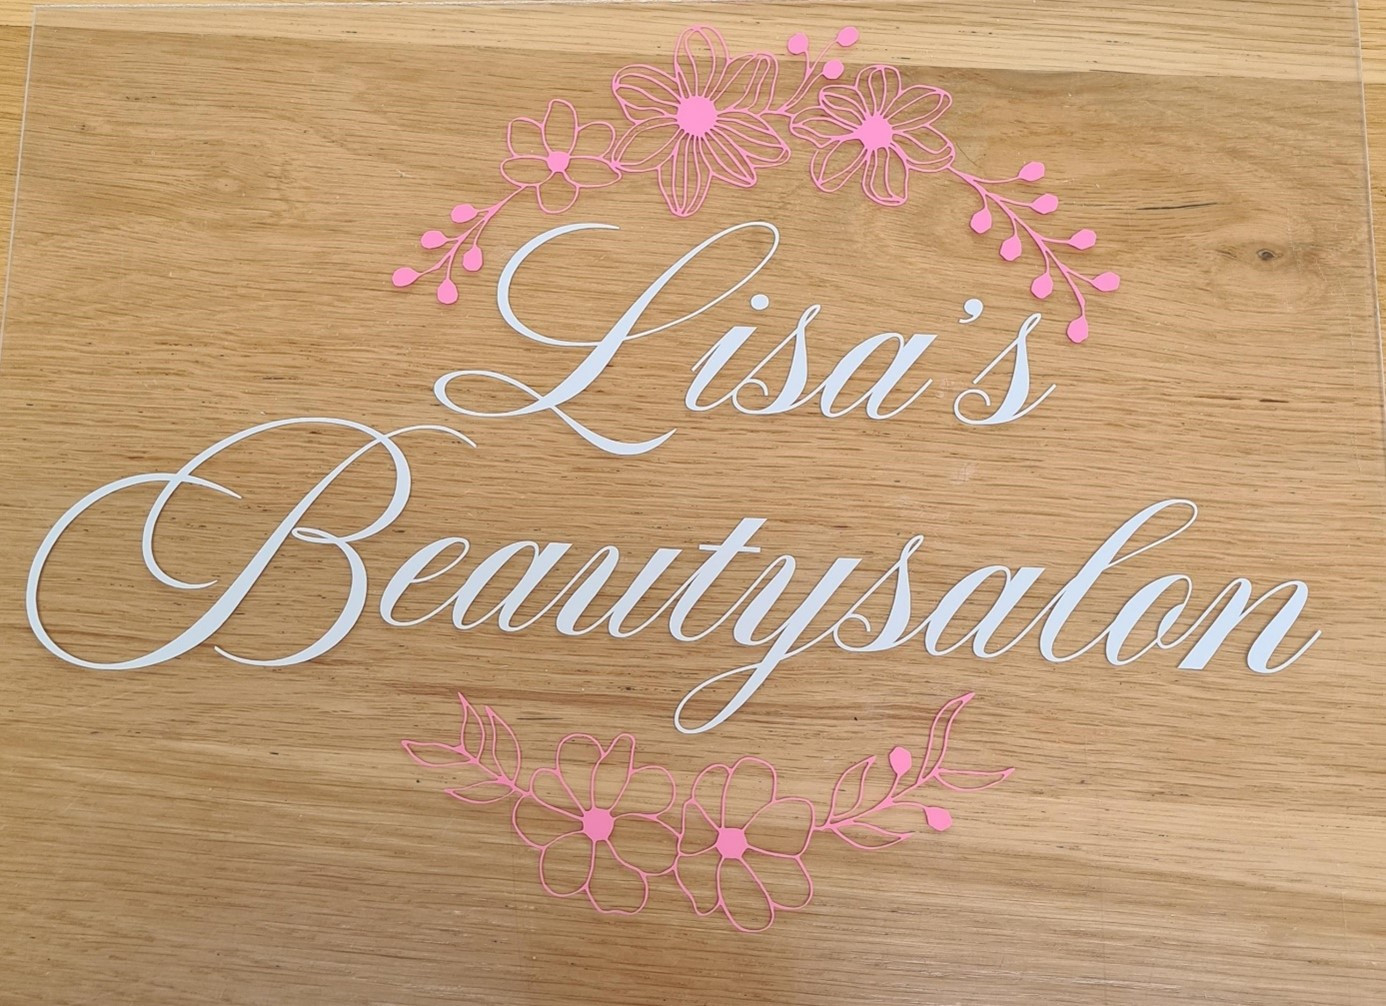 Lisa's Beautysalon